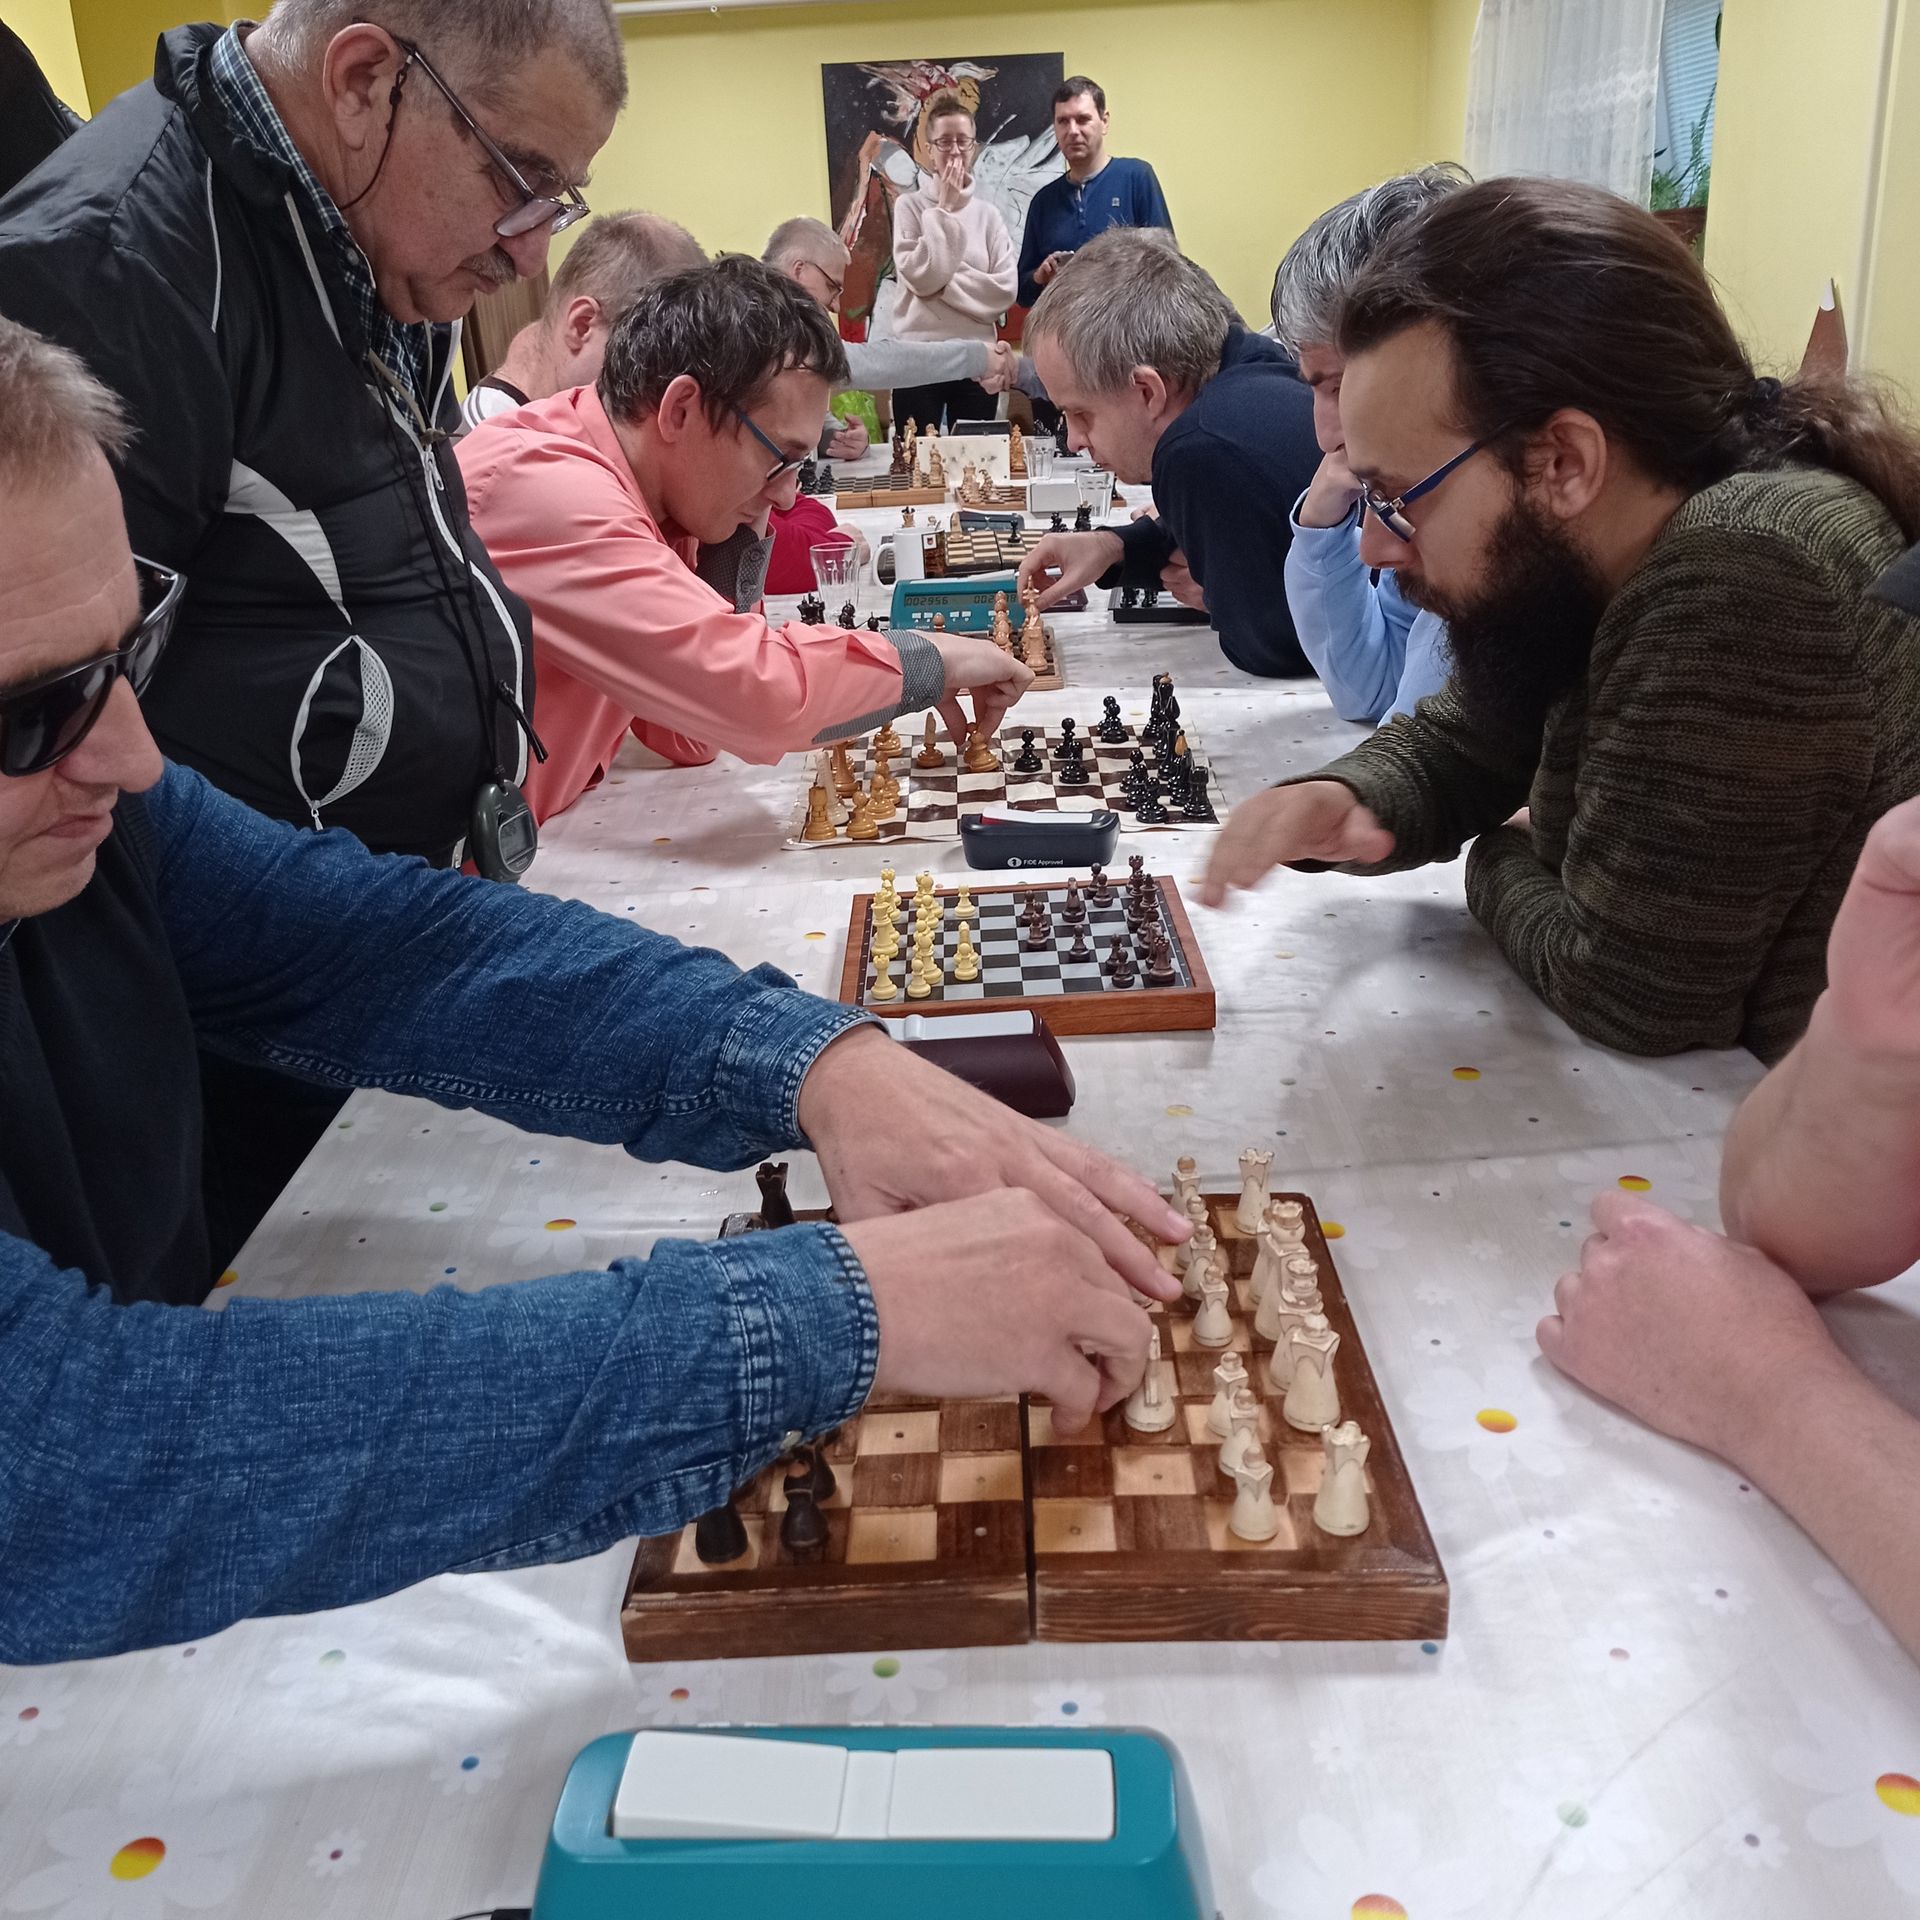 Bližší záber na hráčov, šachovnice a rozohrané partie medzi nimi. Na fotografii je niekoľko hráčov šachu a záber na šachovnice s figúrkami.